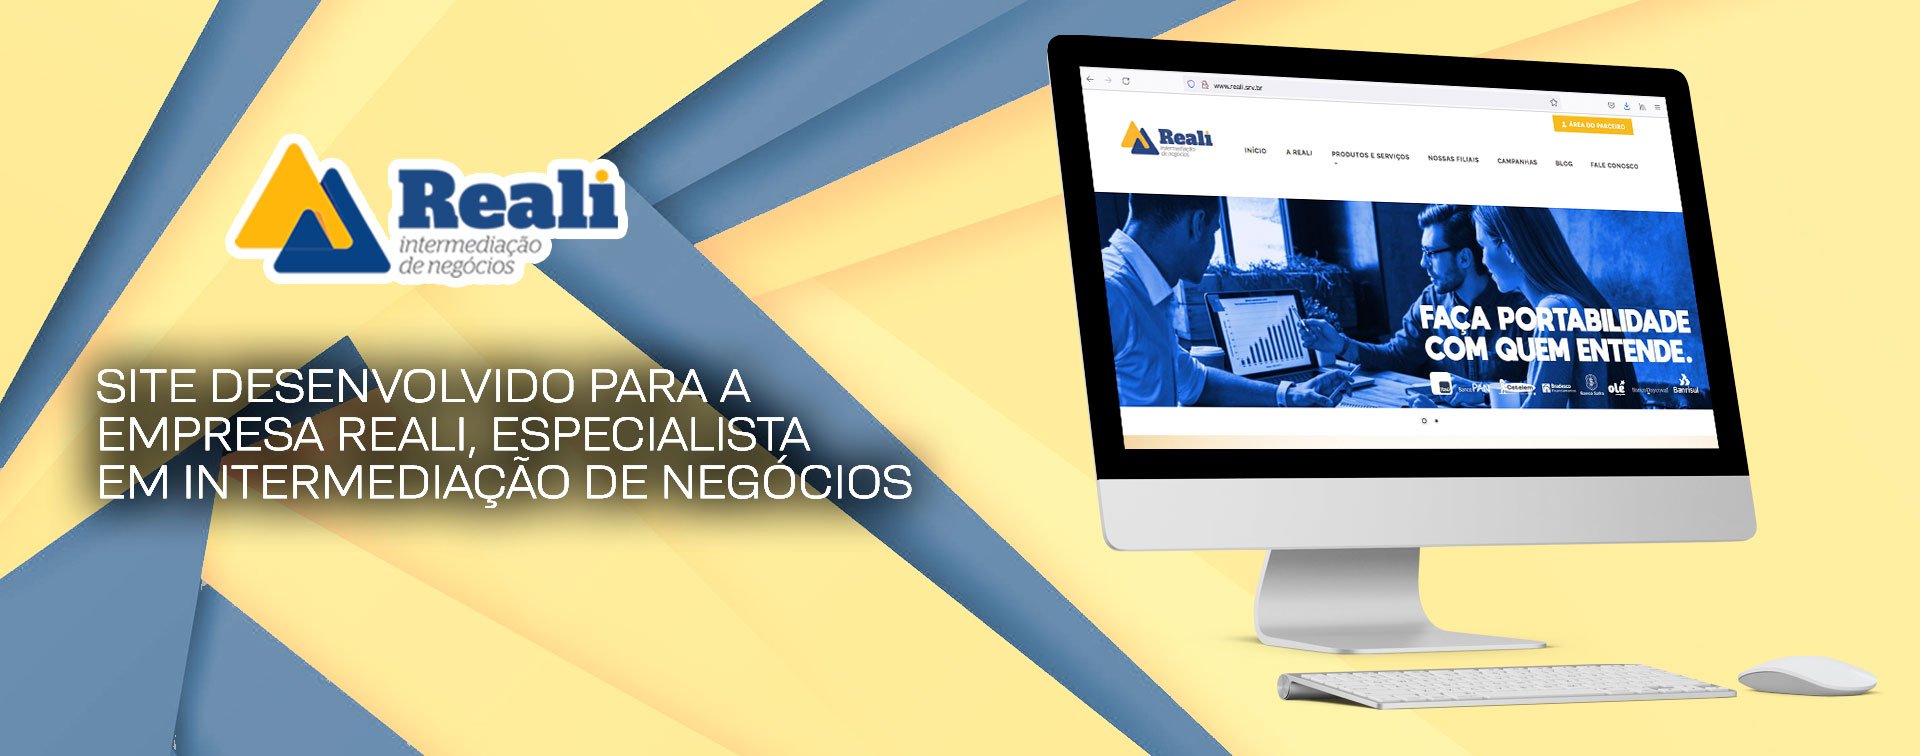 Reali Intermediação de Negócios - Case da Agência Davs de Marketing Digital em Fortaleza